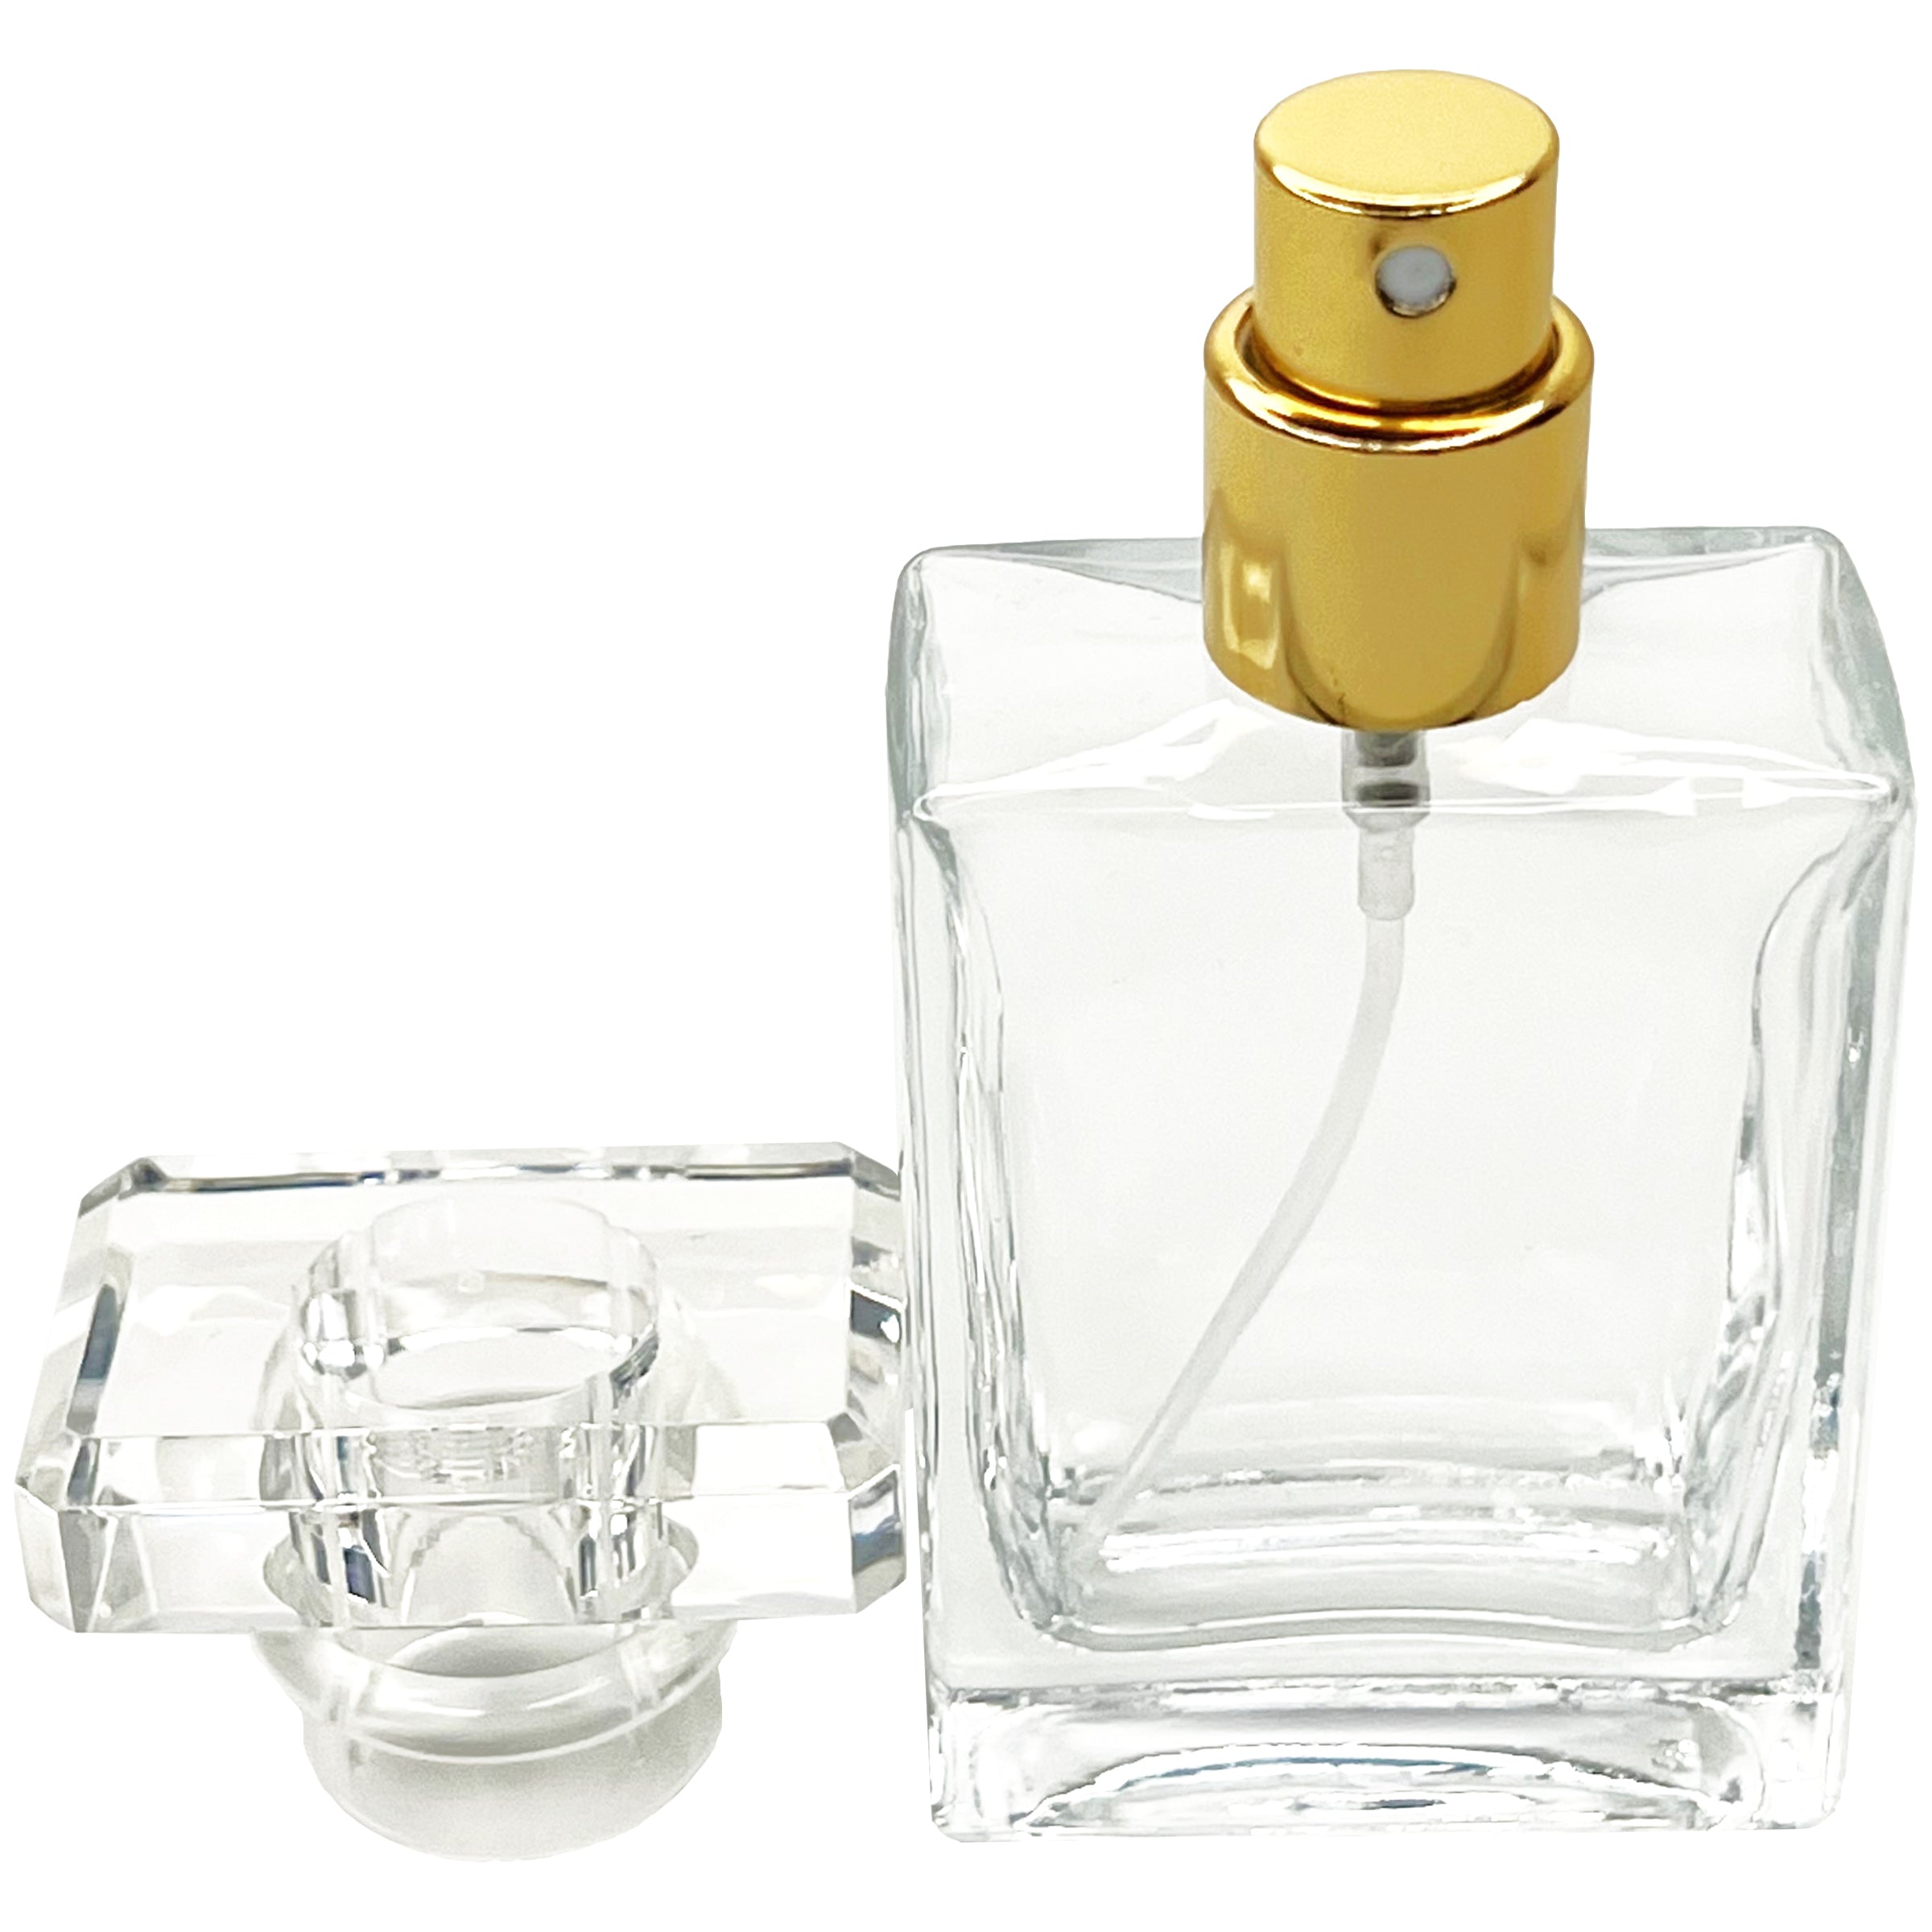 30ml 1oz Perfume Square Glass Spray Bottles Gold Atomizer